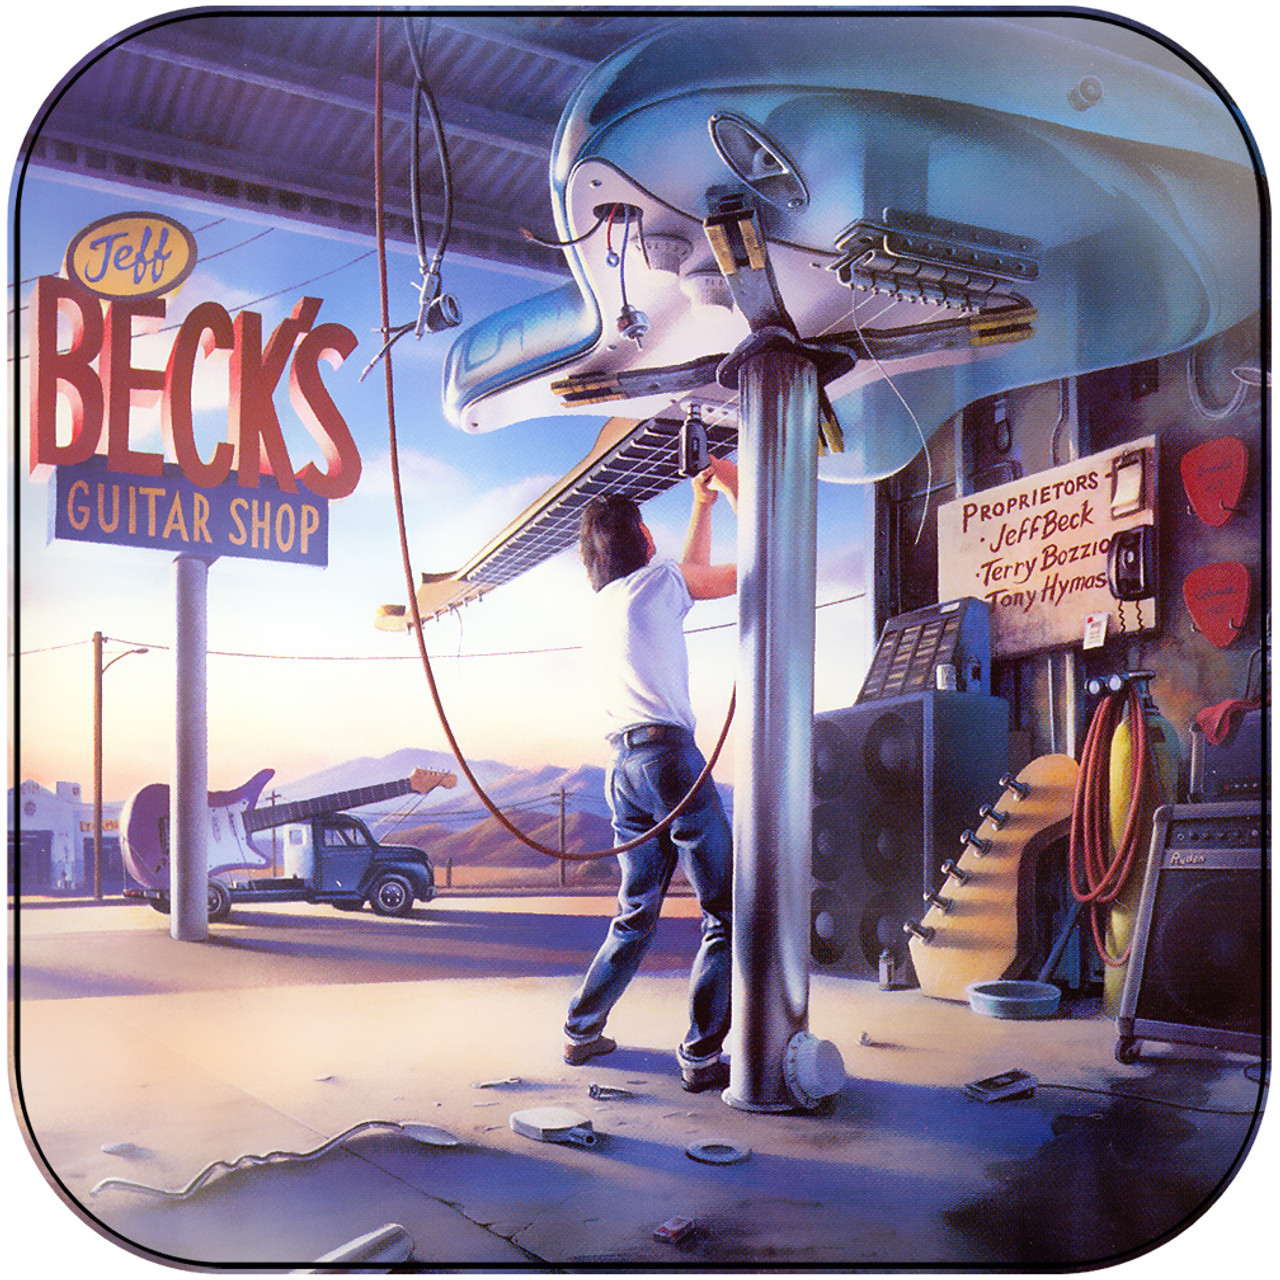 Jeff Beck - Jeff Becks Guitar Shop-2 Album Cover Sticker Album Cover Sticker